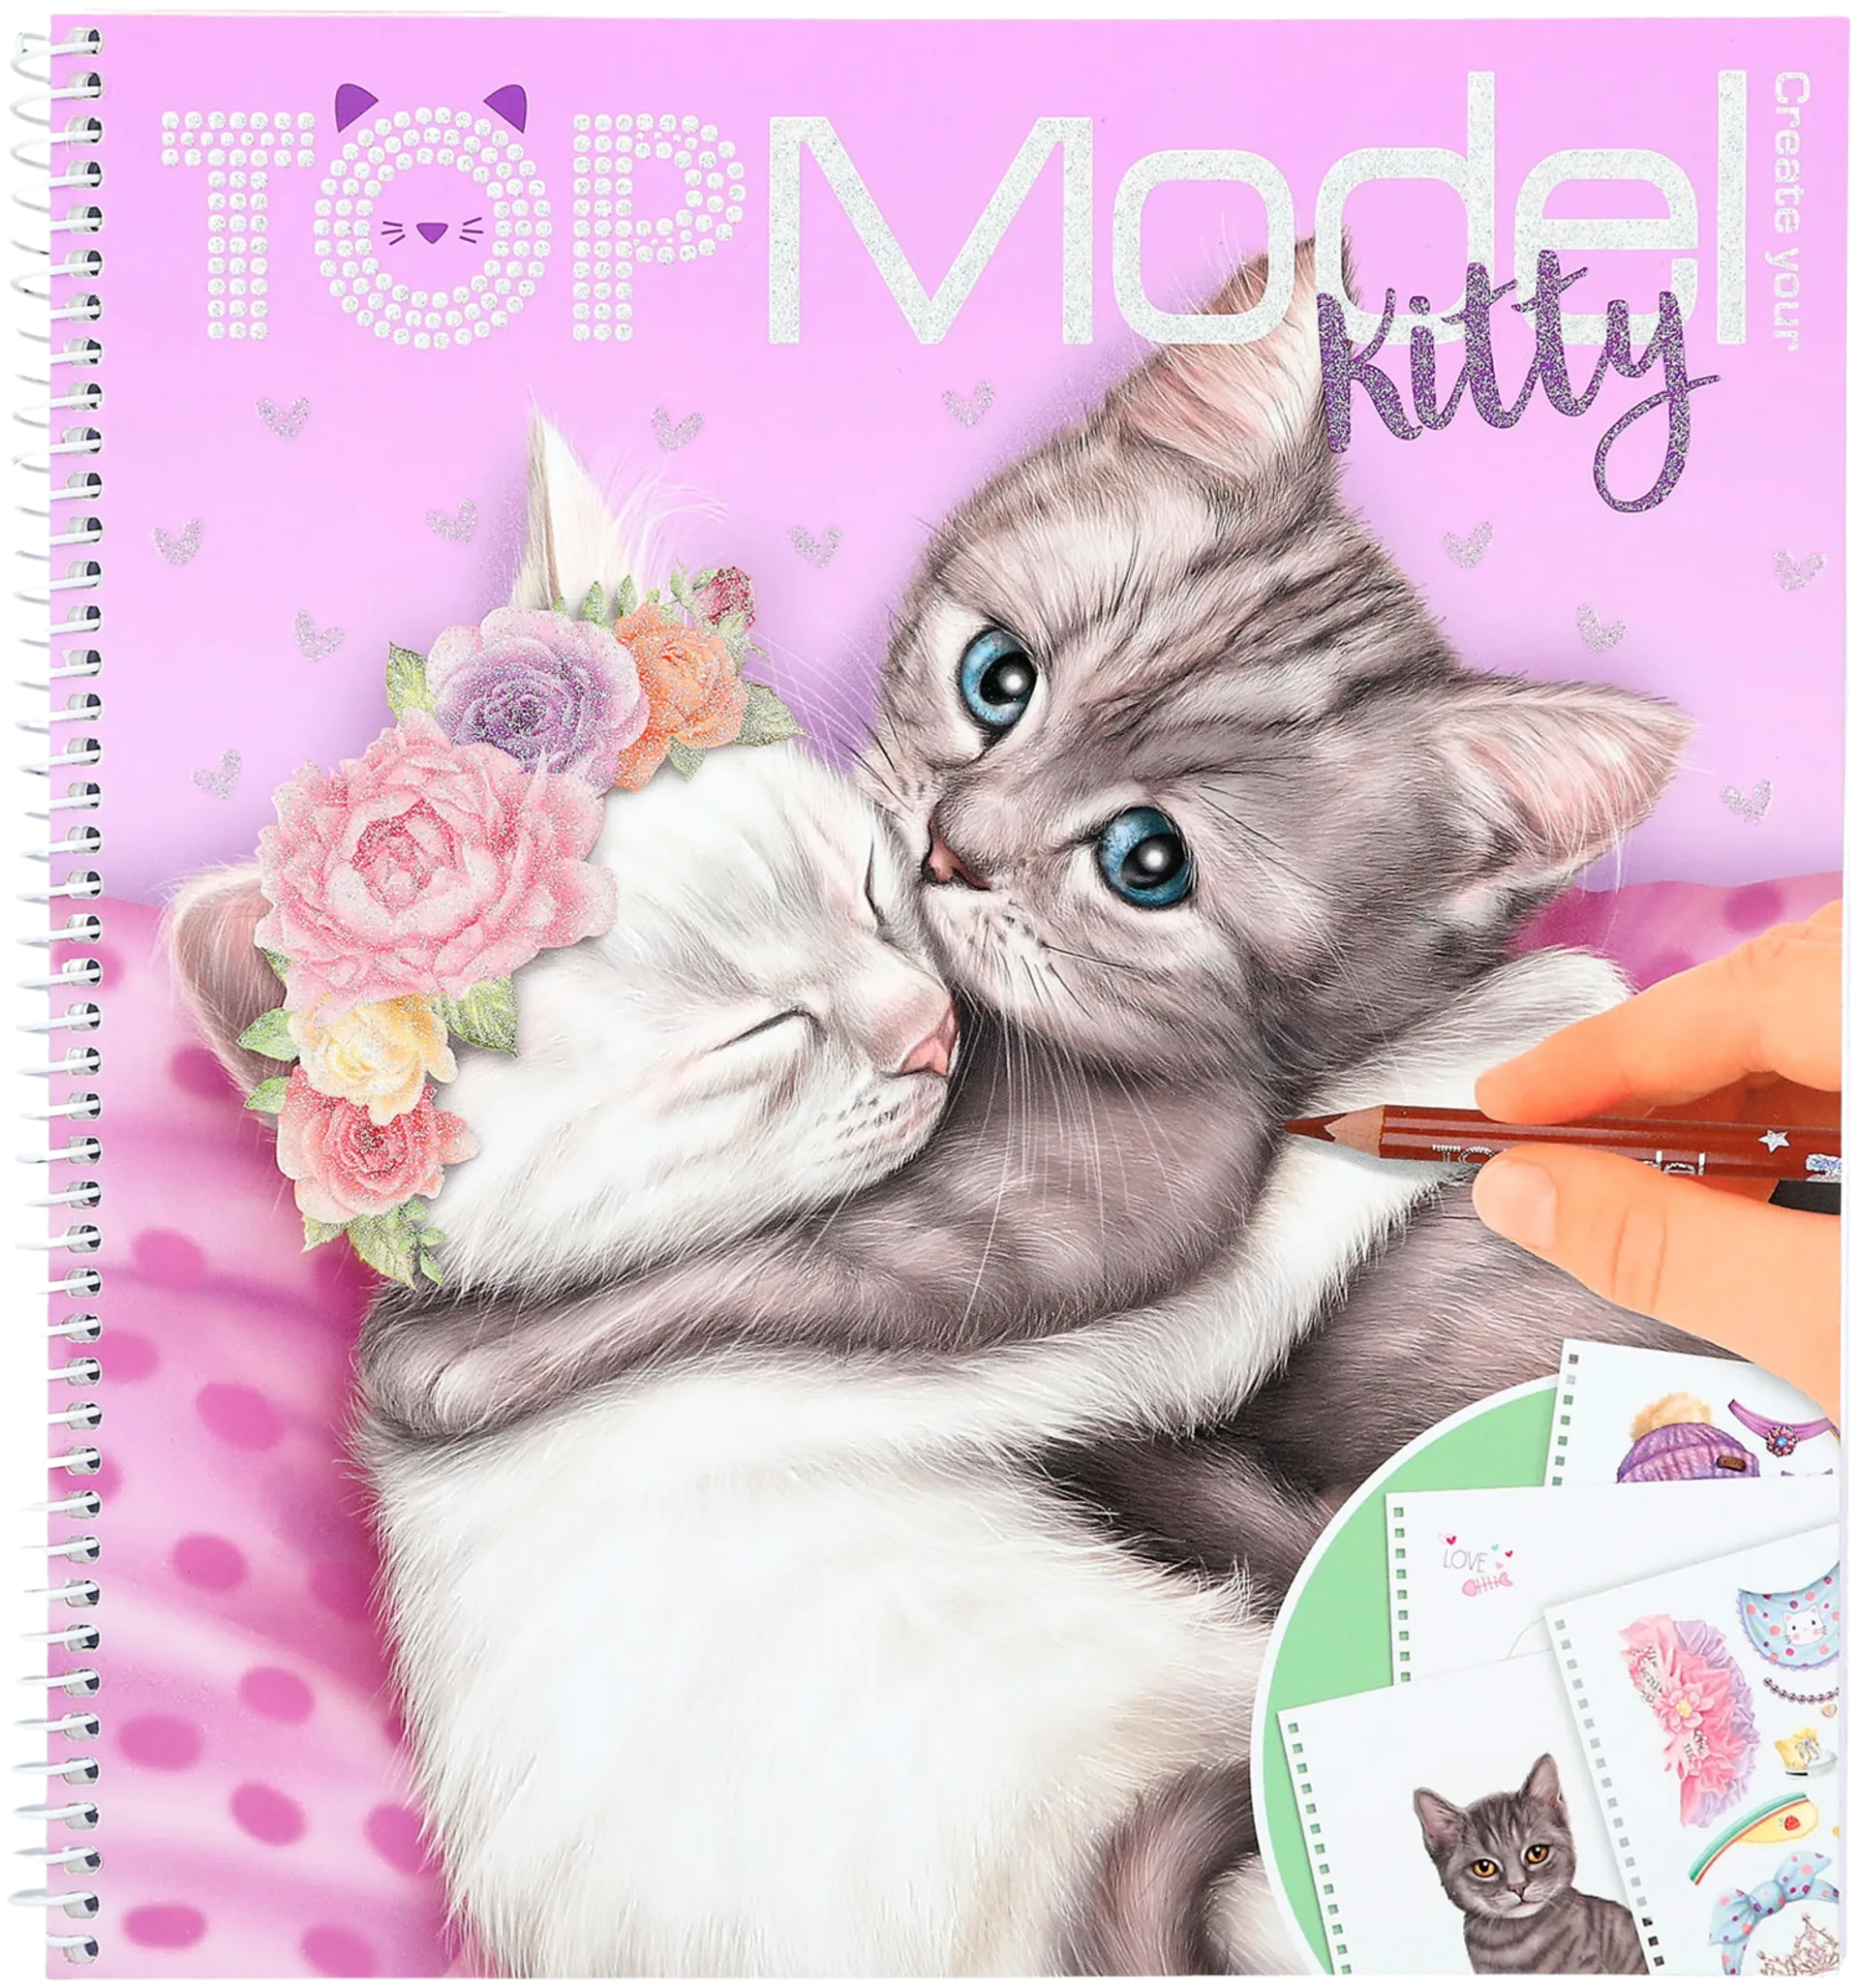 TOPModel Kitty Suunnittelukirja - 2